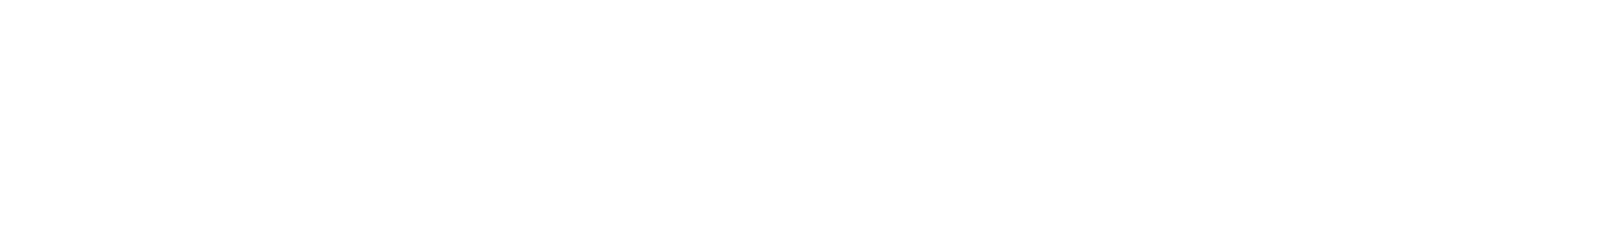 GEOX Logo groß für dunkle Hintergründe (transparentes PNG)